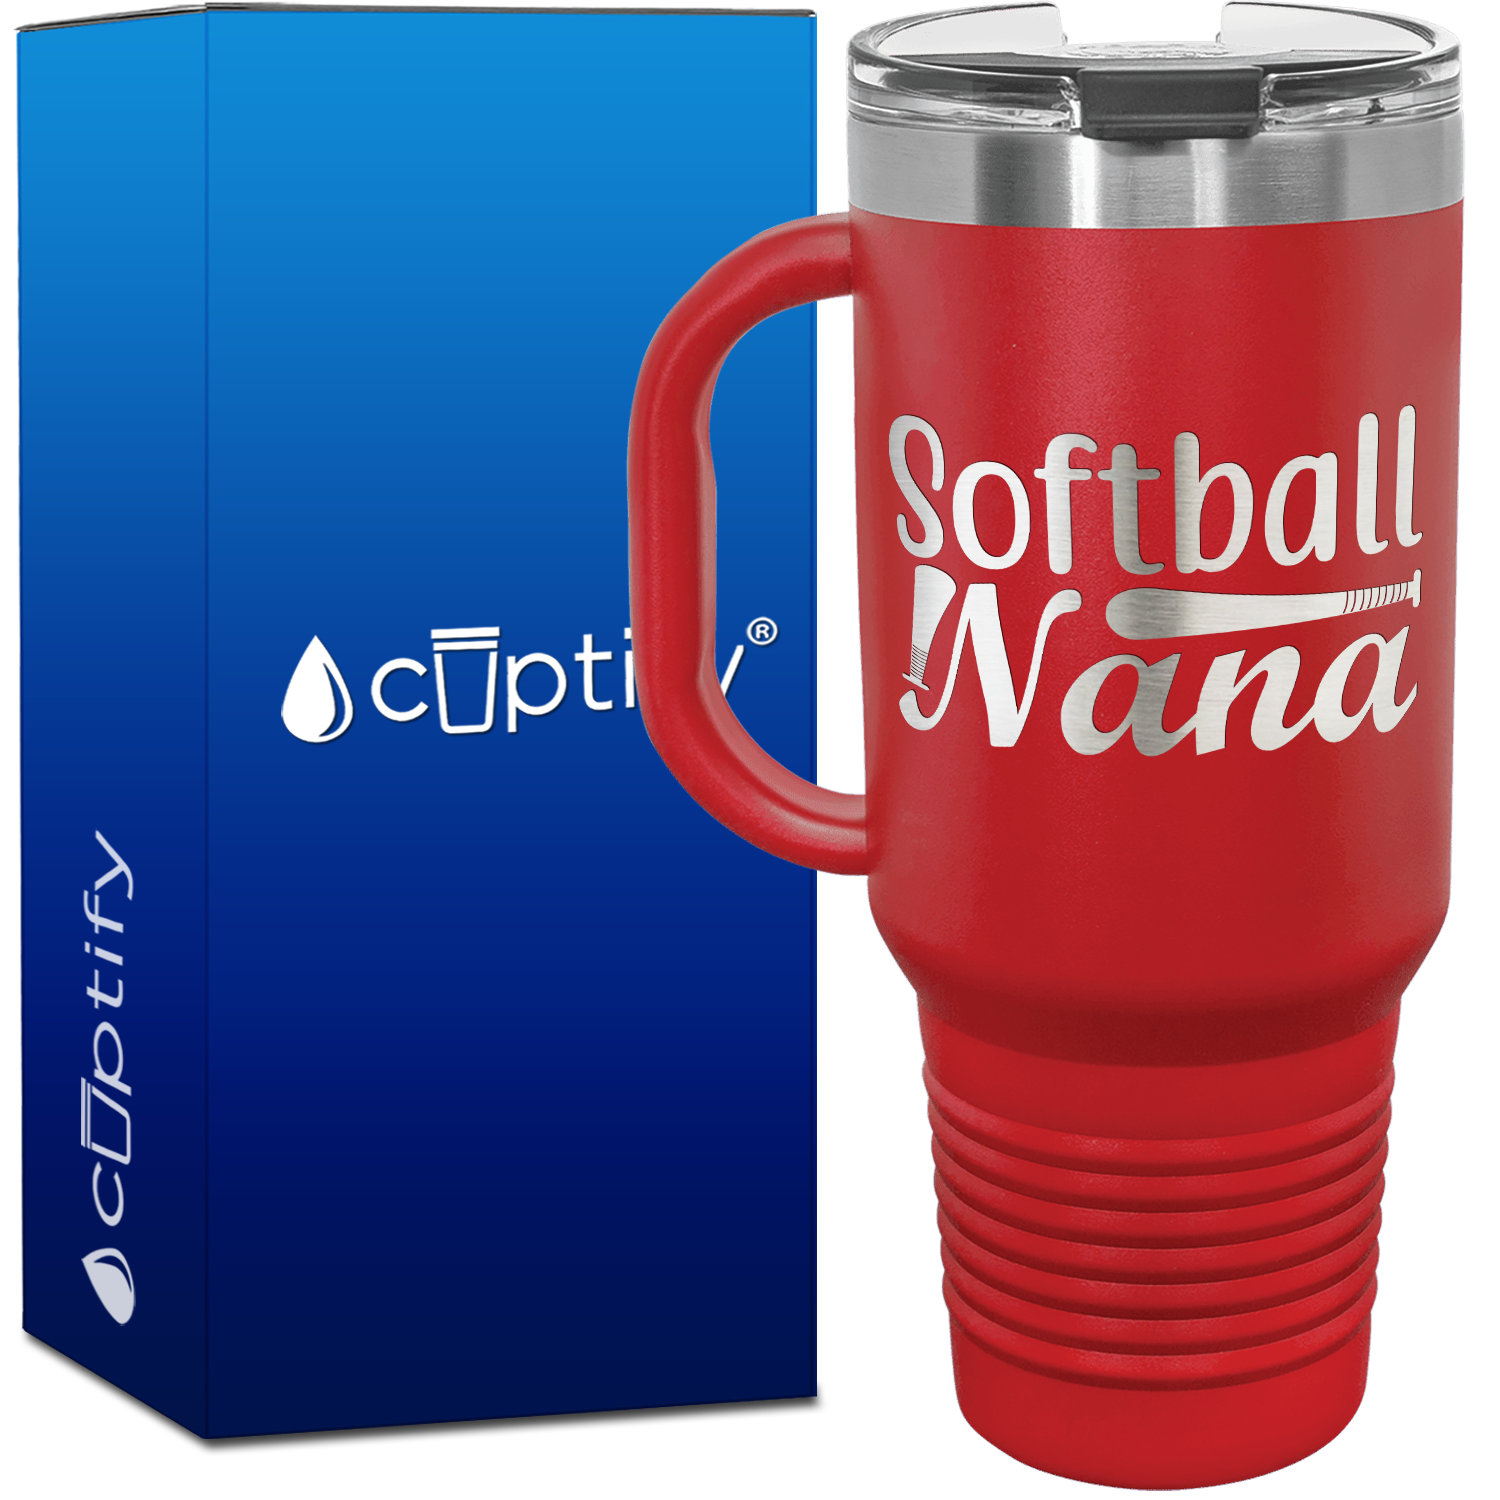 Softball Nana 40oz Softball Travel Mug